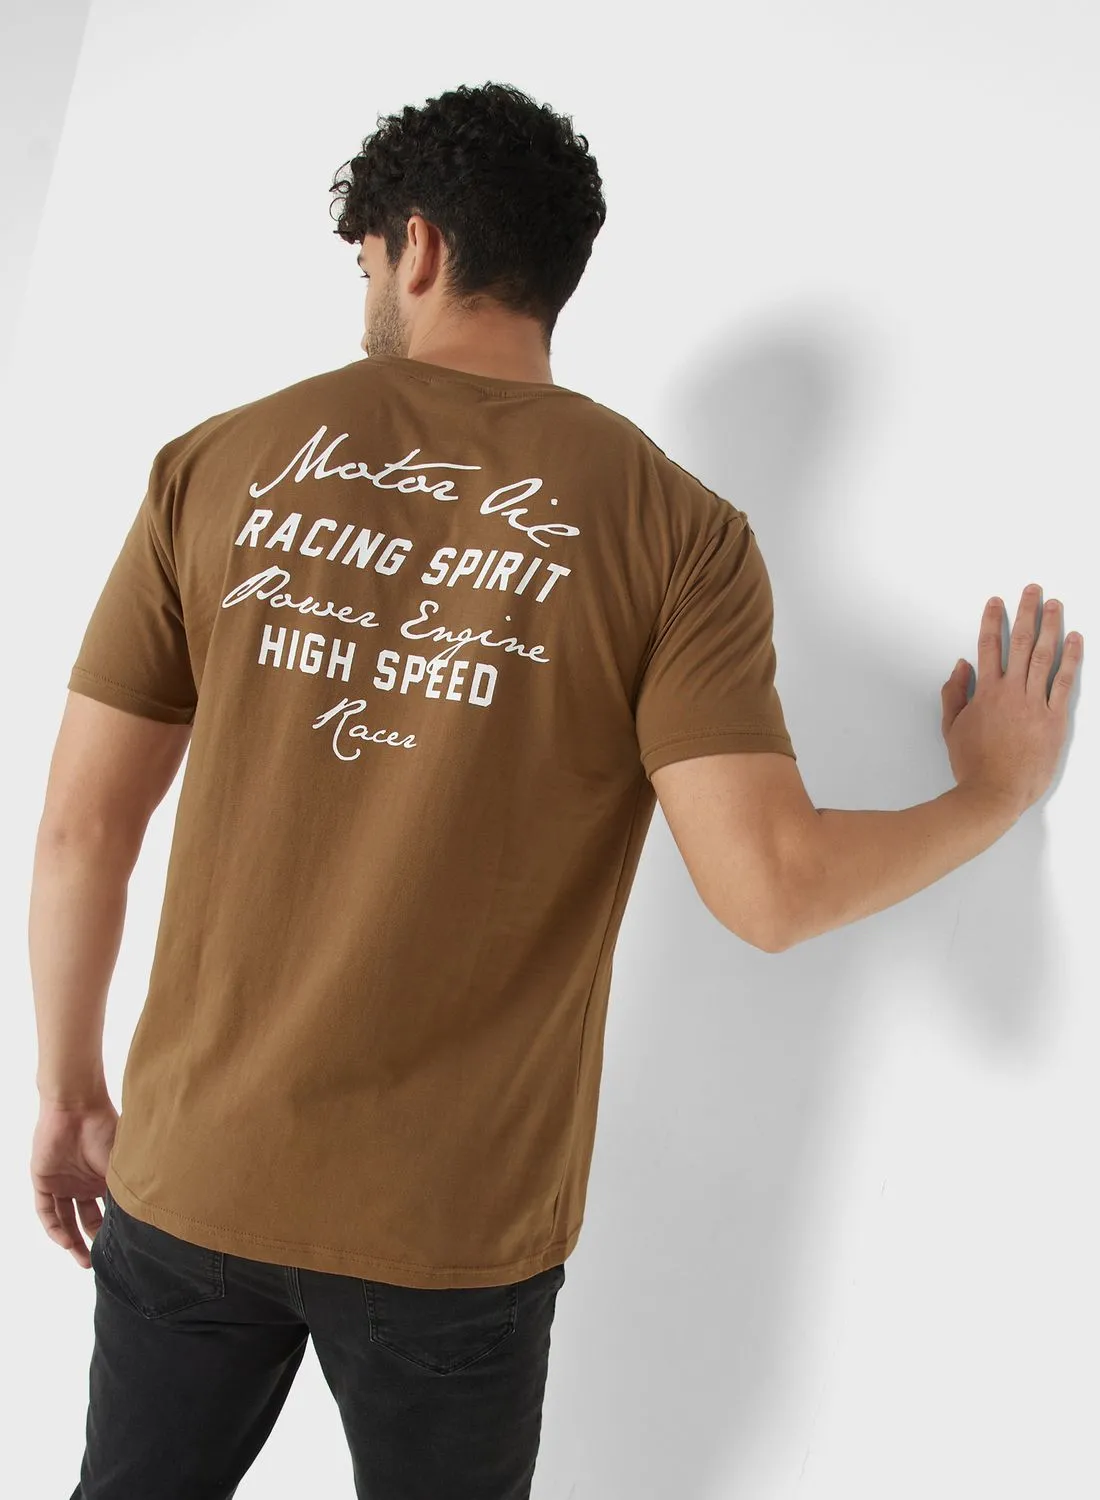 Seventy Five Koovs Mens T-Shirt